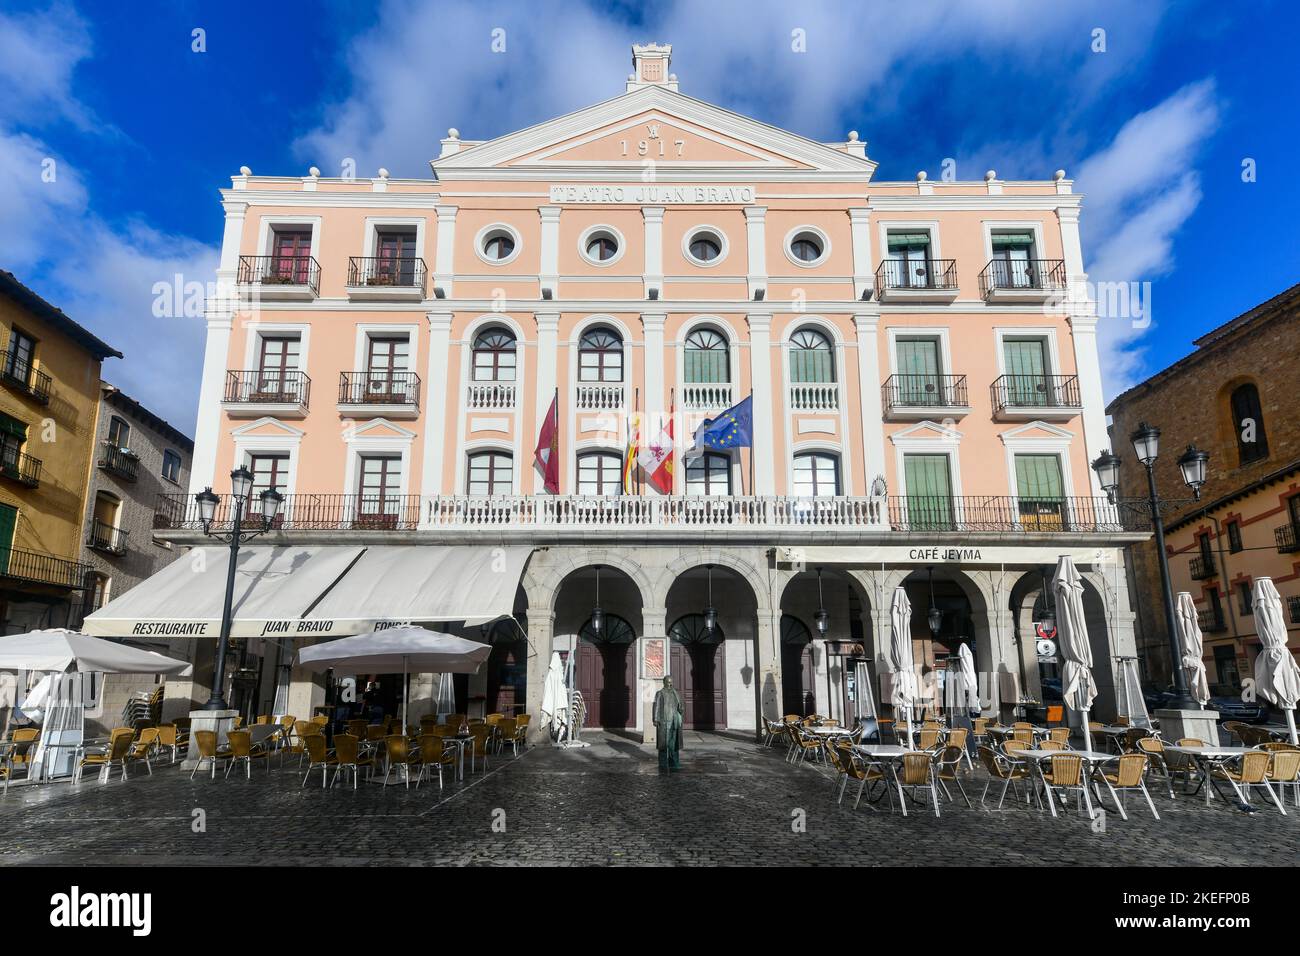 Segovia, Spain - Nov 27, 2021: The Juan Bravo theater on the Plaza Mayor square in Segovia, Spain. Stock Photo